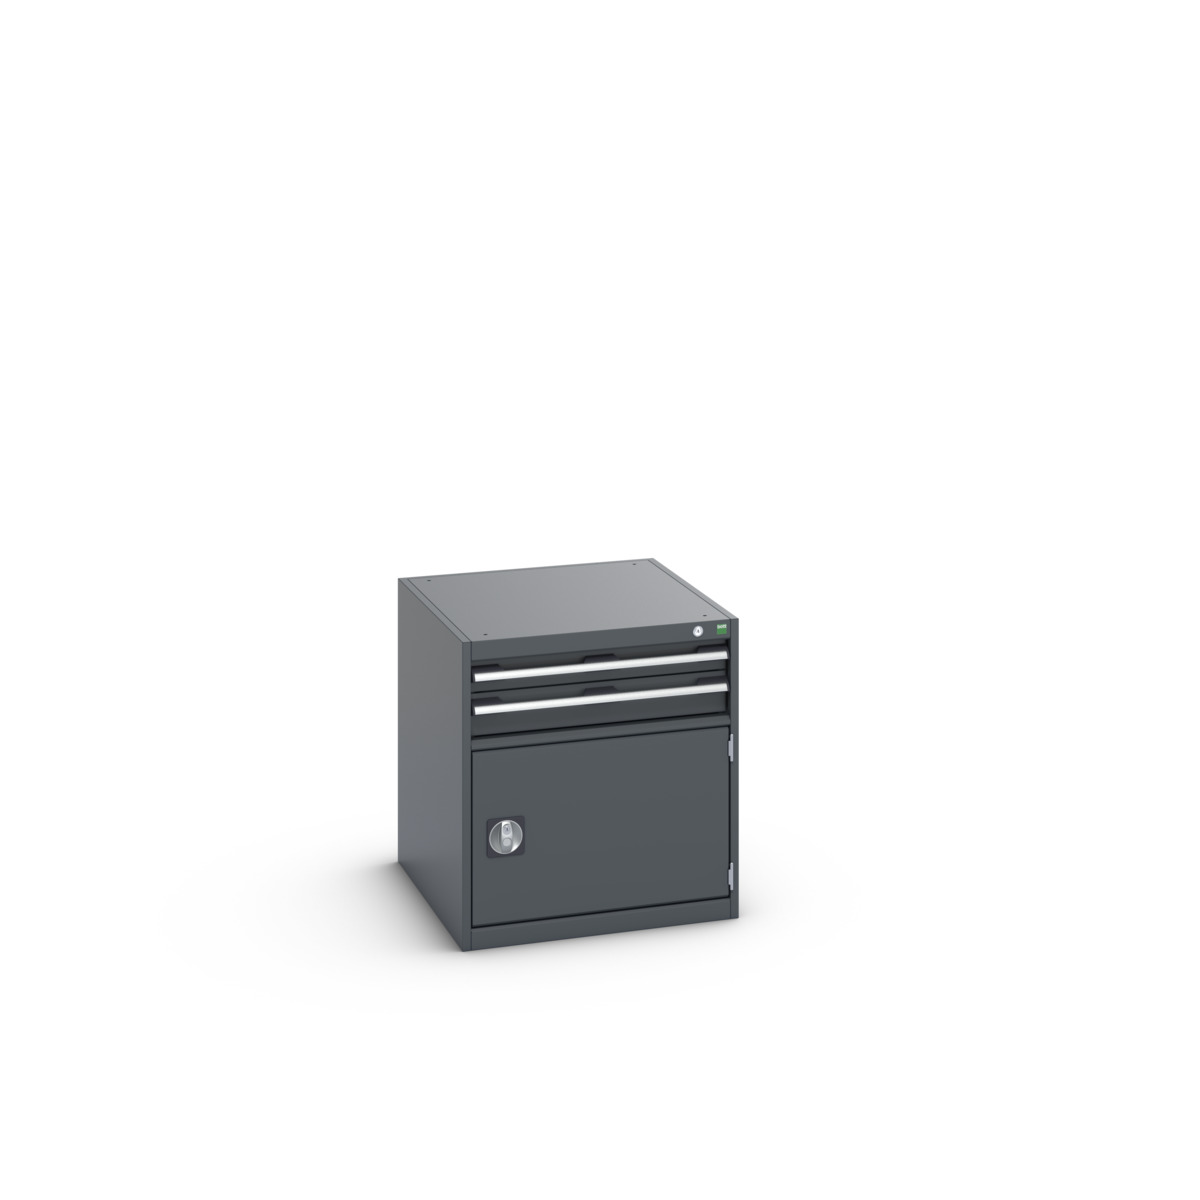 40027001.77V - cubio drawer-door cabinet